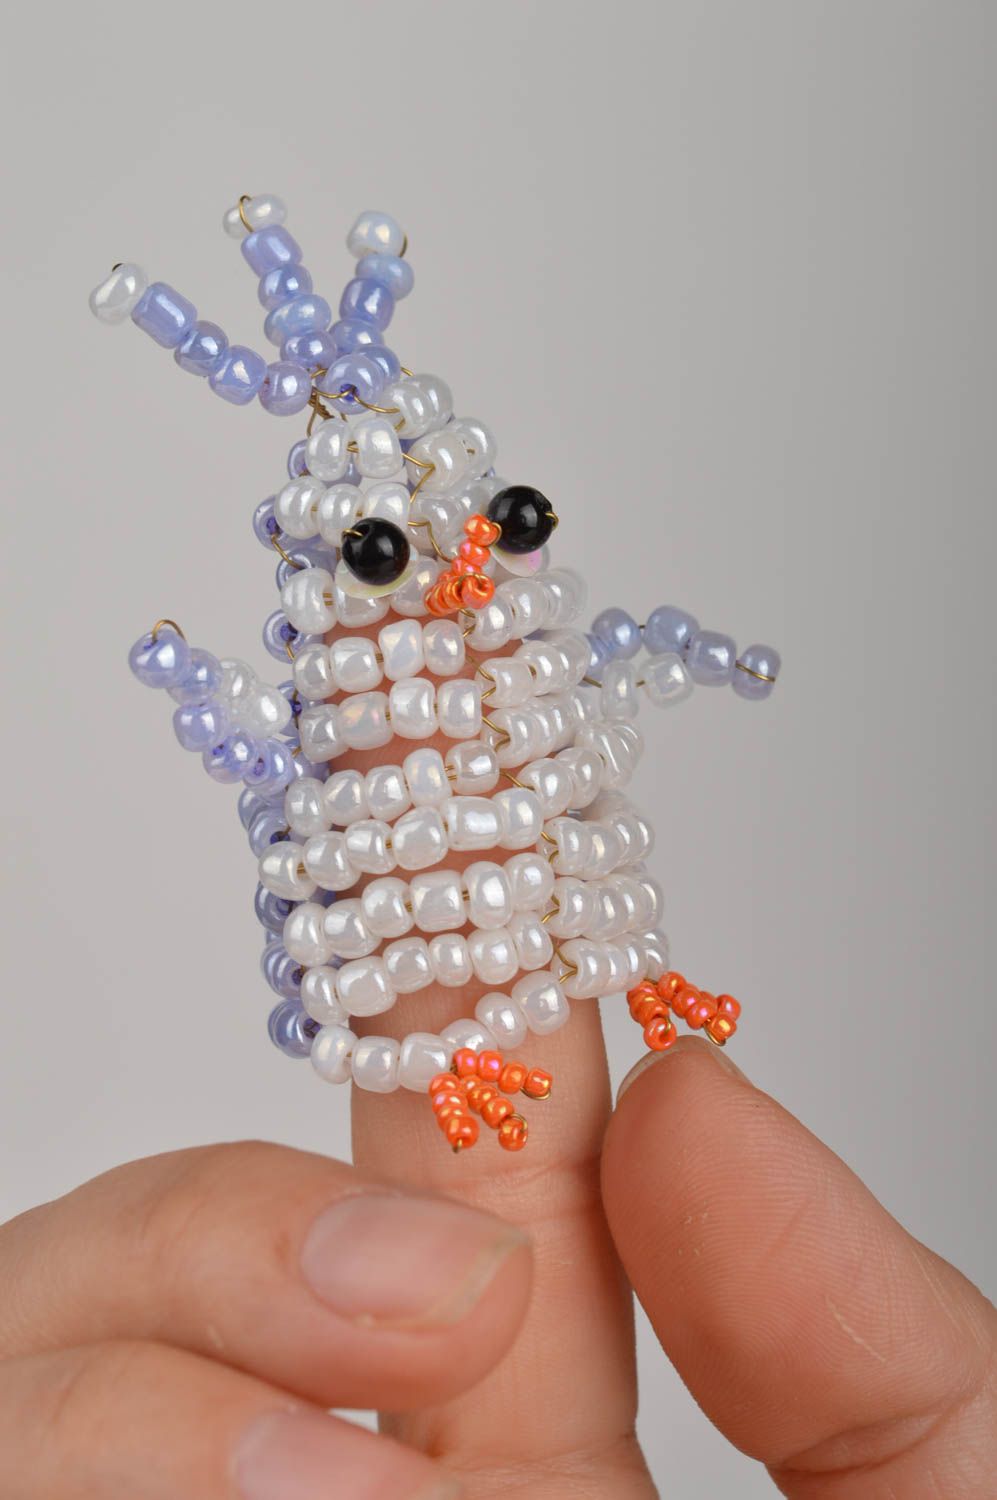 Пальчиковая игрушка пингвин ручной работы из бисера маленькая оригинальная фото 5